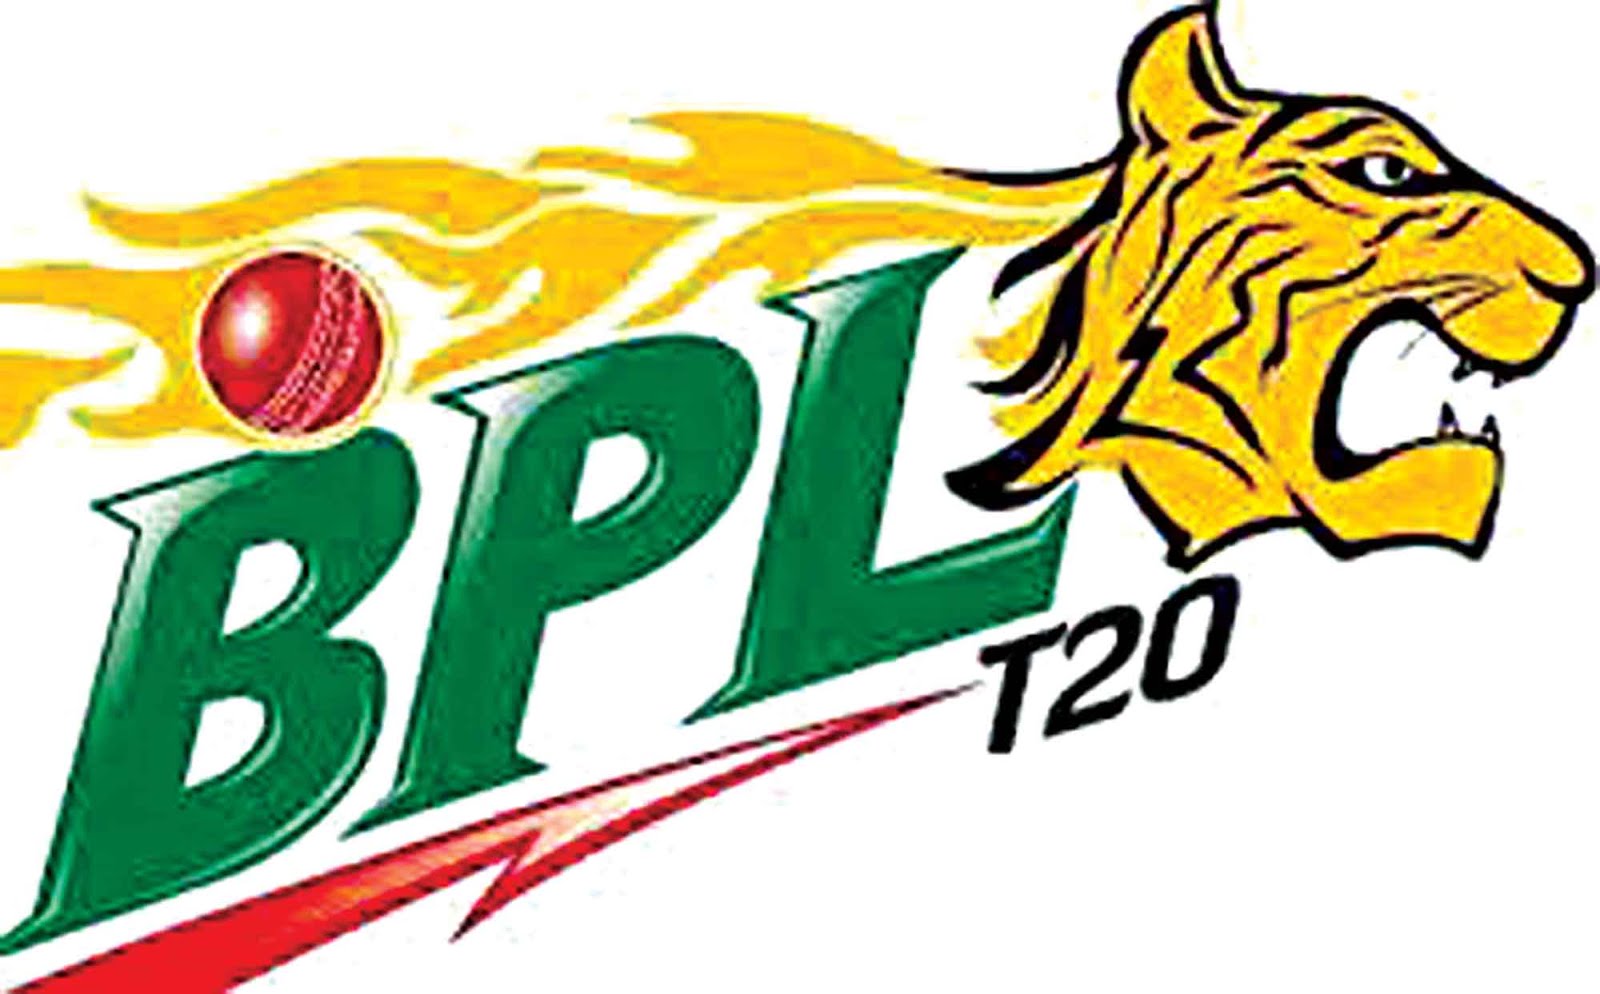 BPL Live Cricket 2016